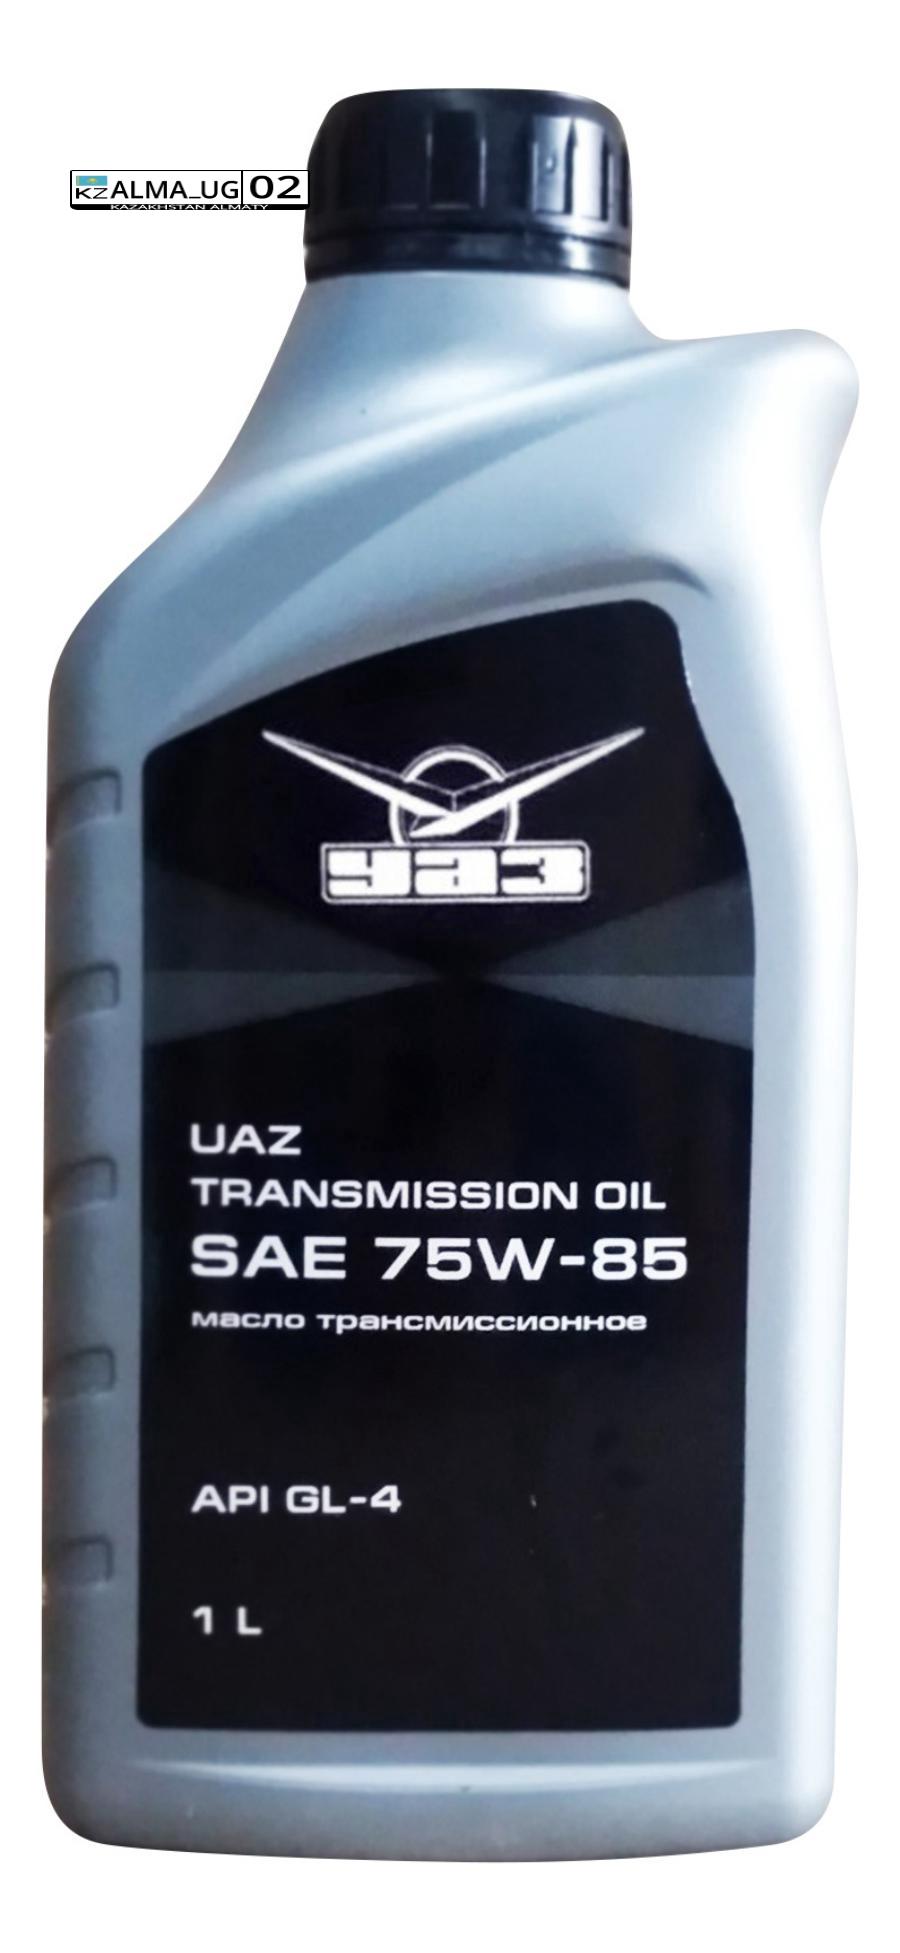 000000473402100 UAZ Масло трансмиссионное полусинтетическое Transmission Oil 75W-85, 1л